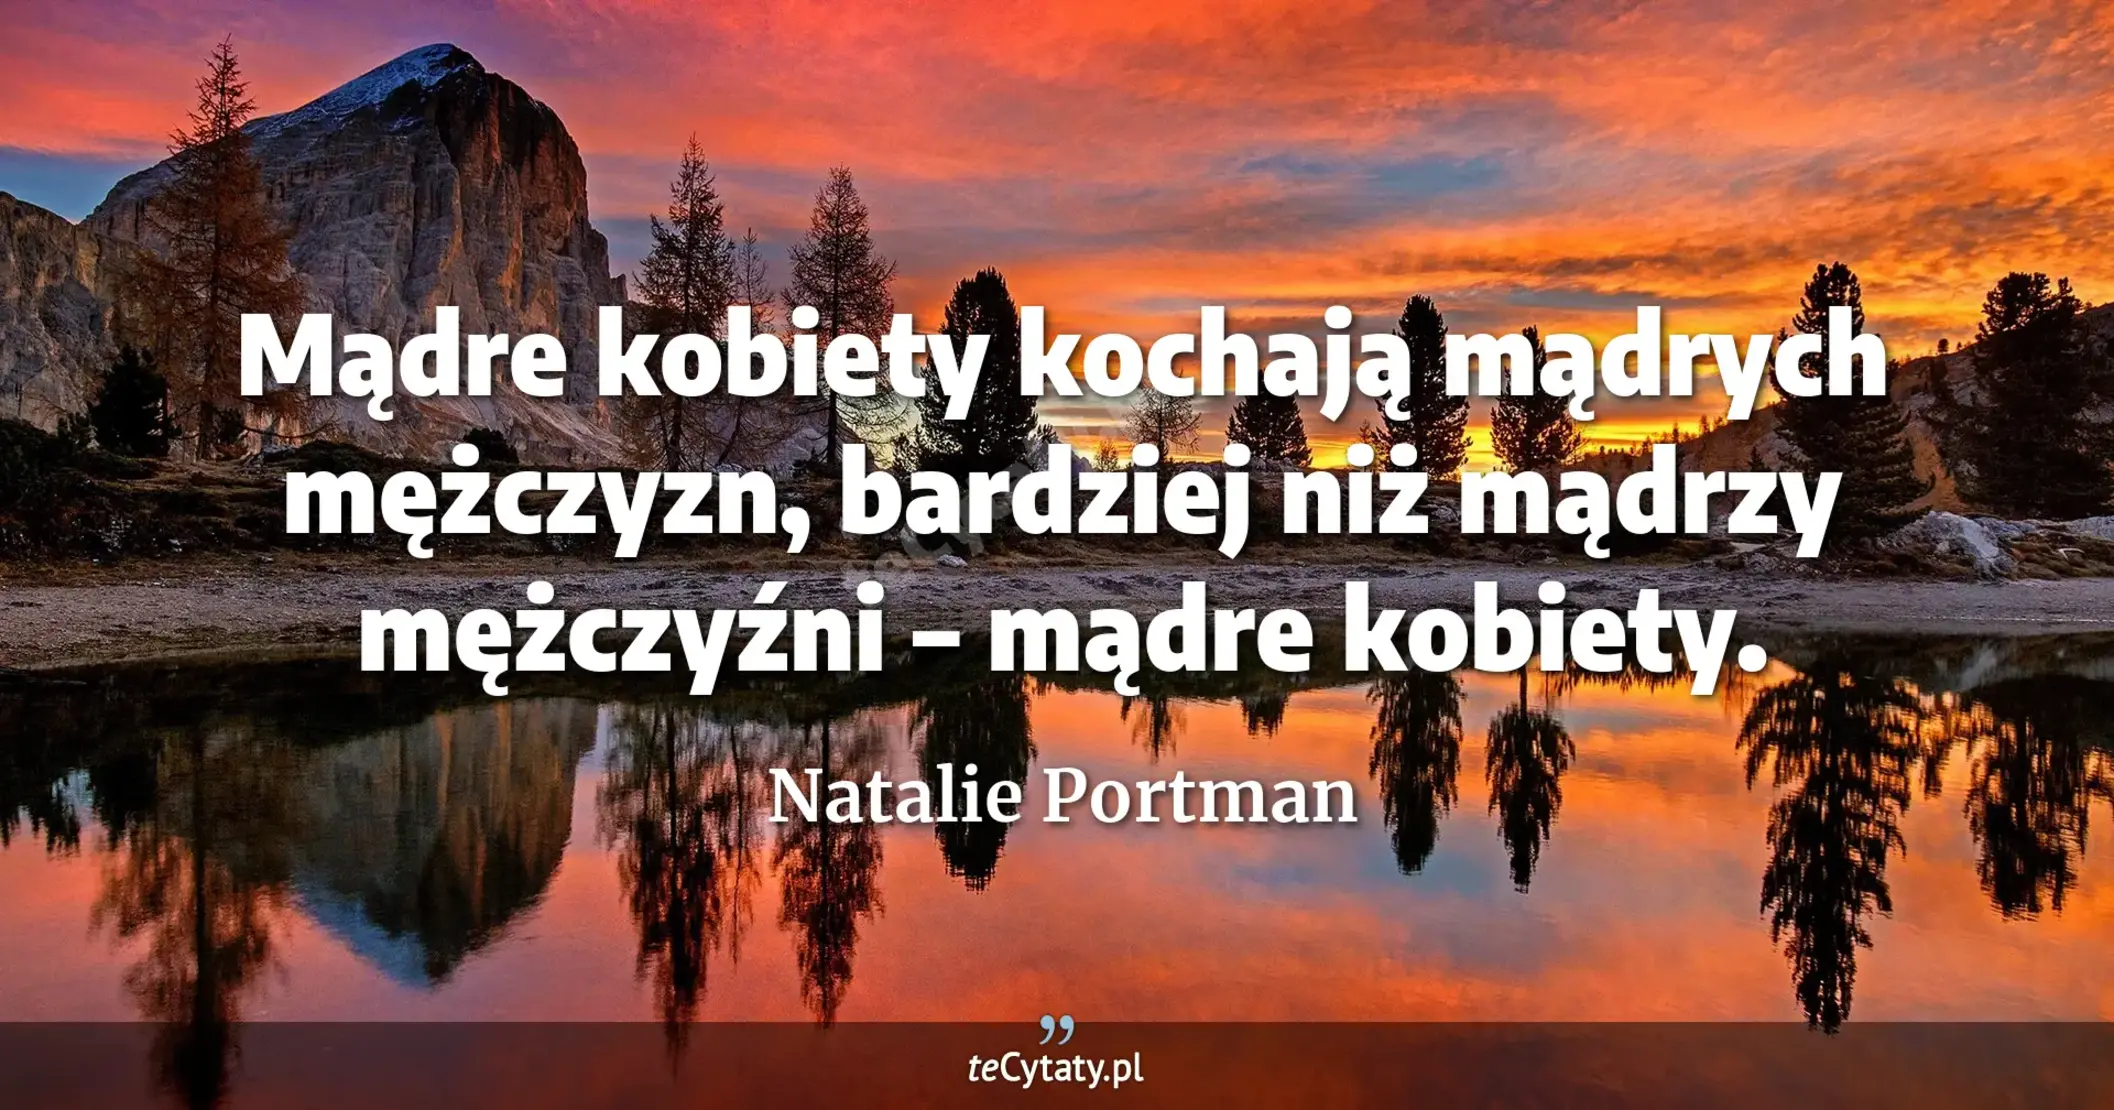 Mądre kobiety kochają mądrych mężczyzn, bardziej niż mądrzy mężczyźni – mądre kobiety. - Natalie Portman